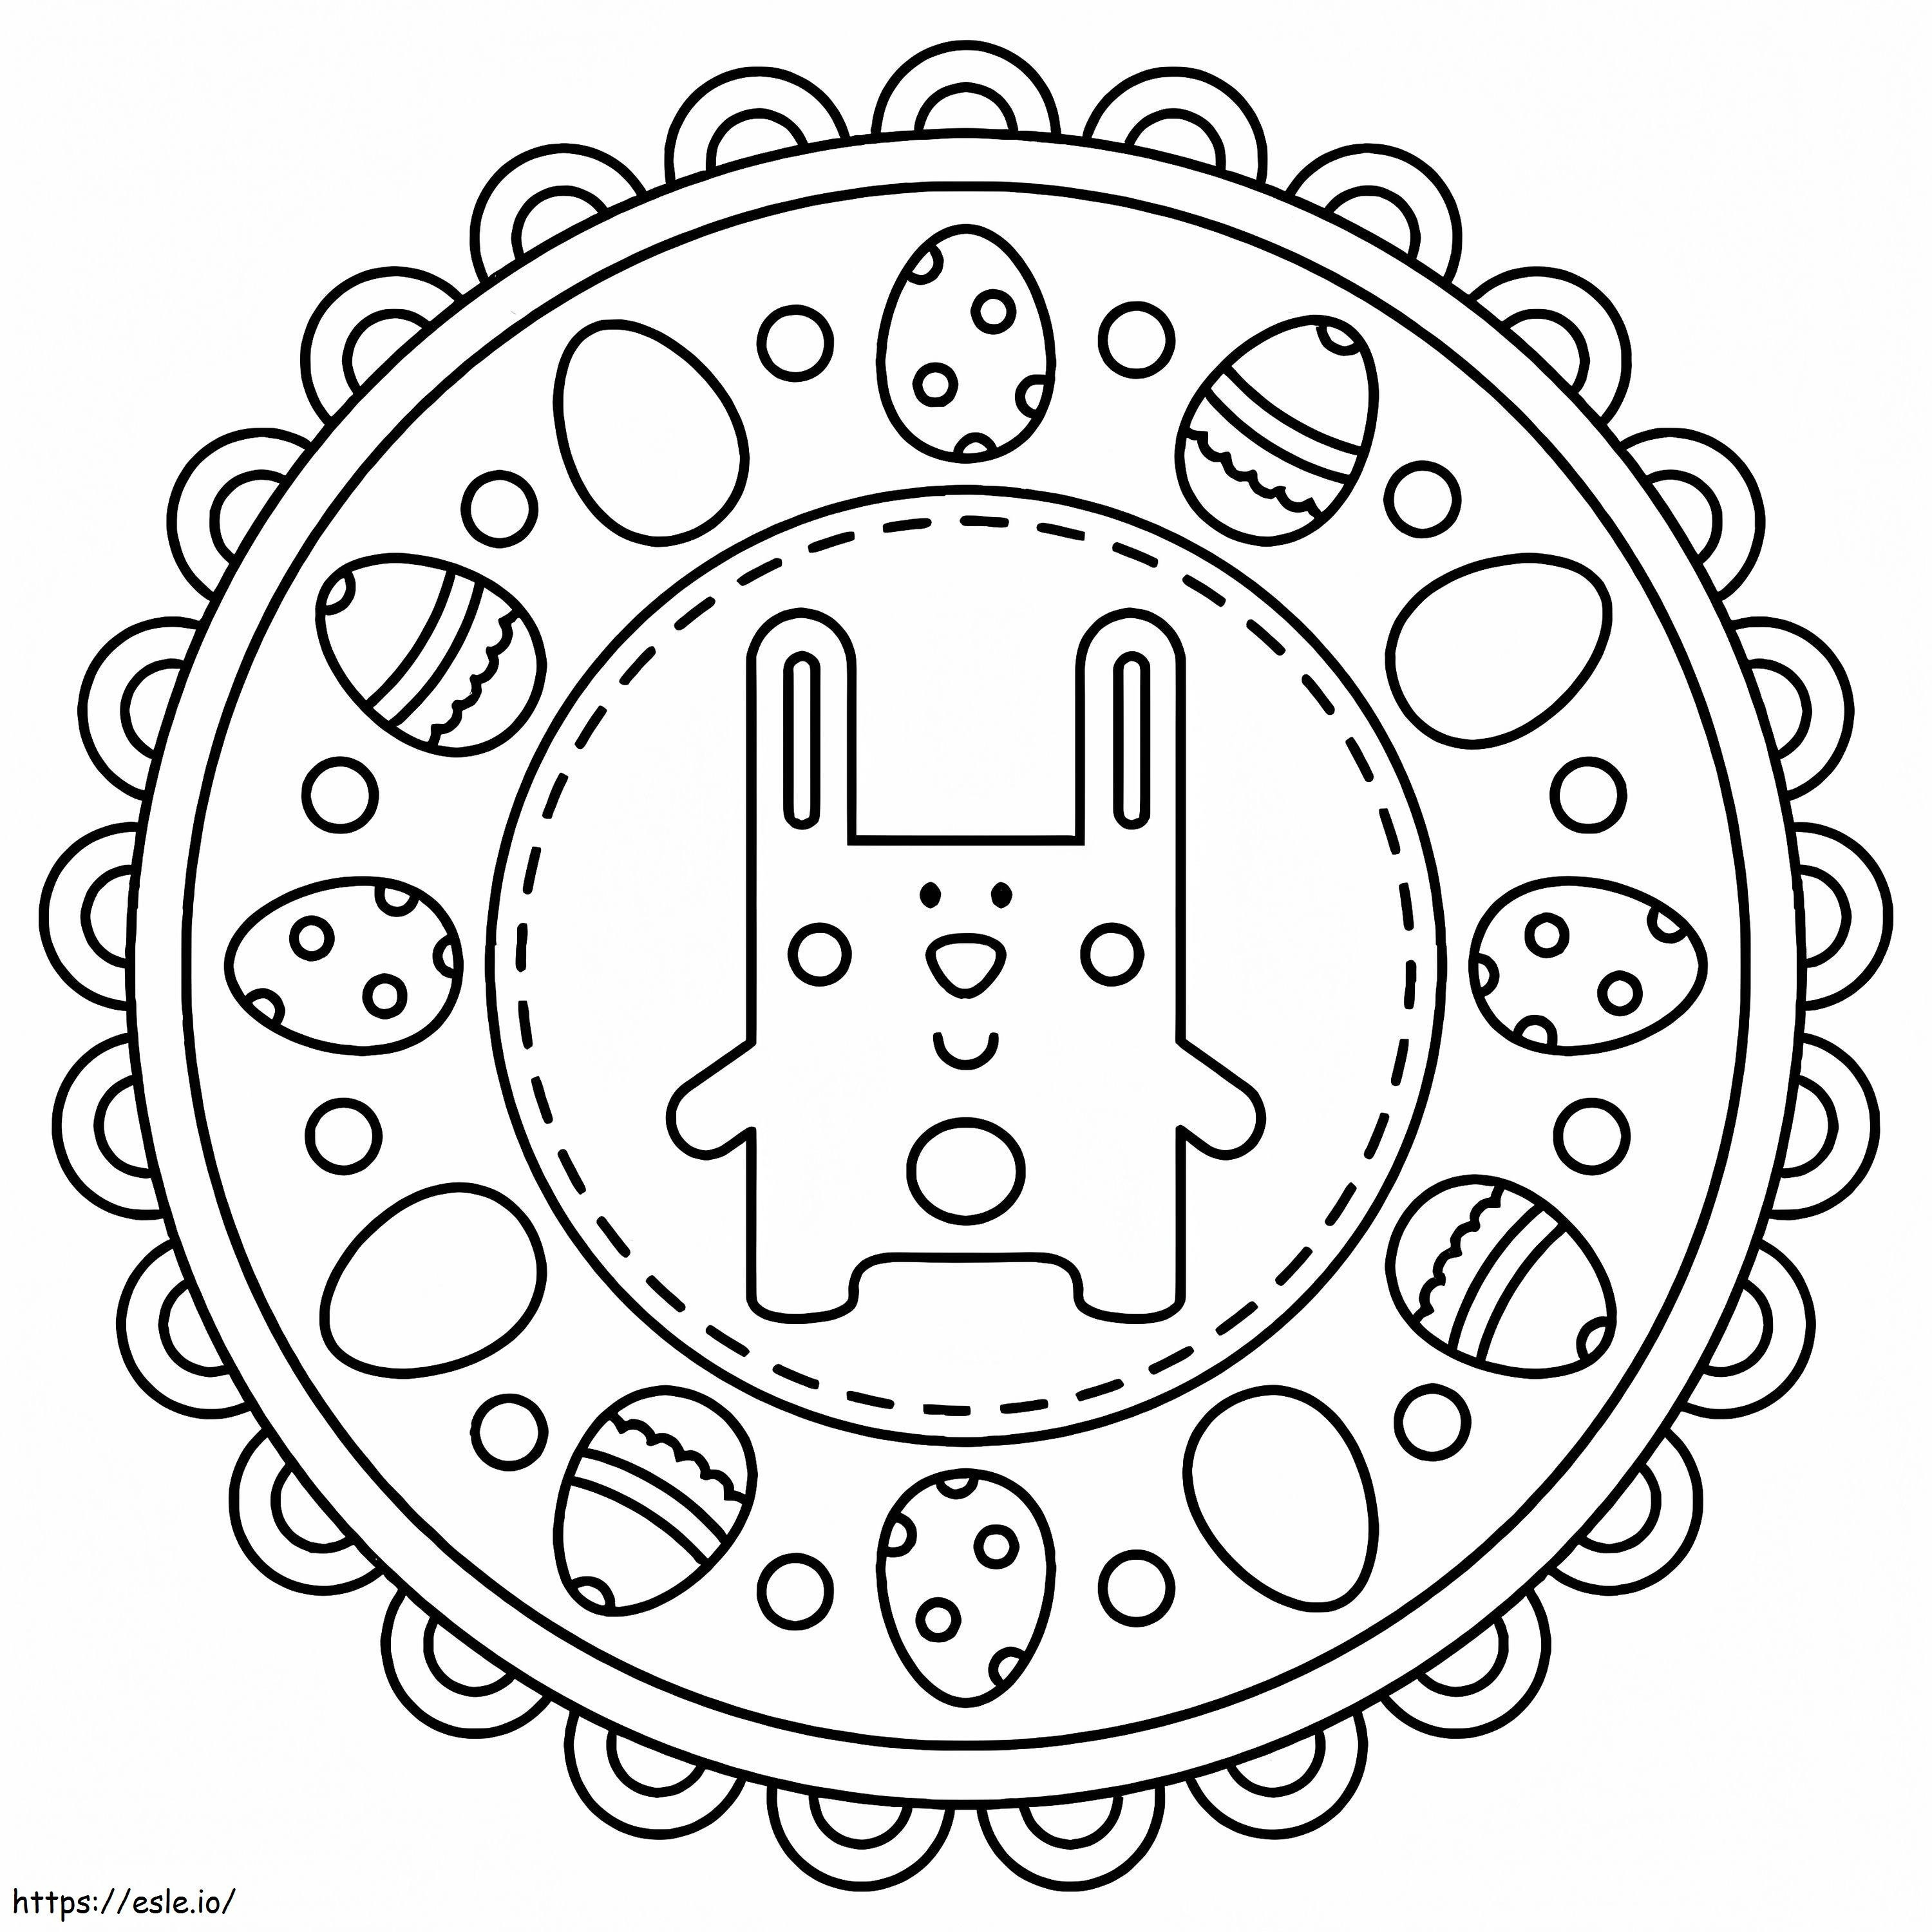 Ostern-Mandala mit niedlichem Kaninchen ausmalbilder